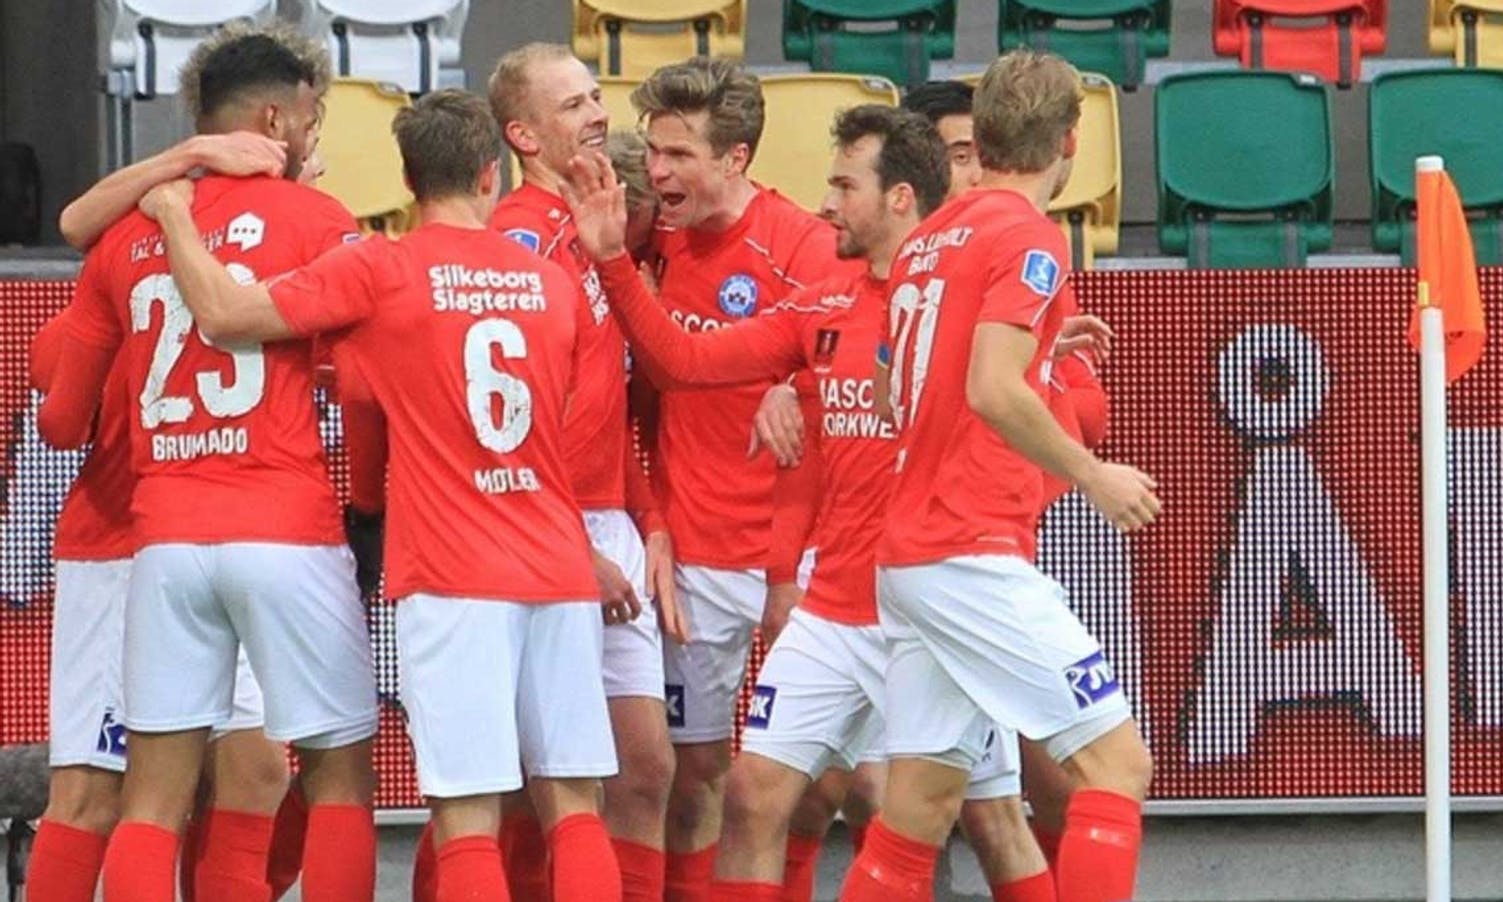 Man of the match: Moberg si første skåring for Silkeborg blei avgjerande